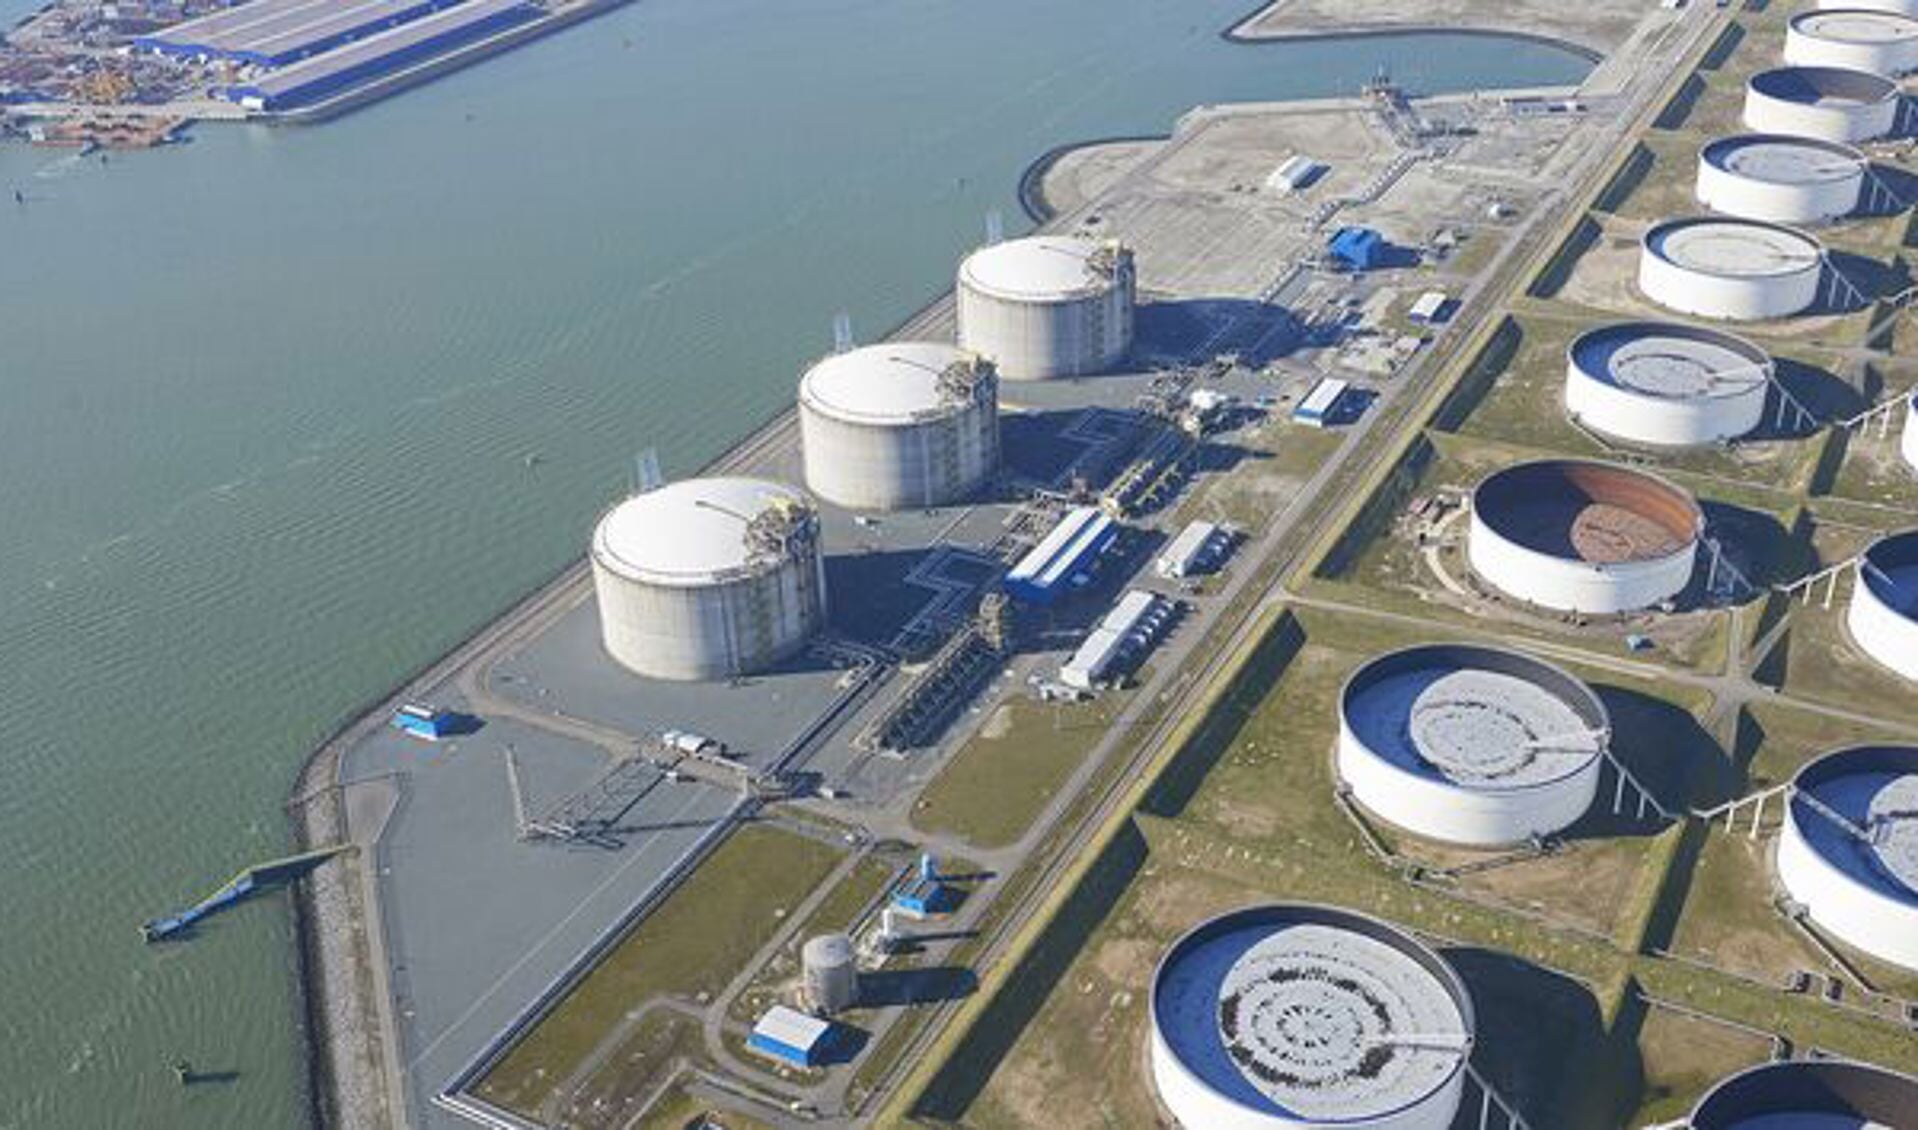 De drie grijze LNG-tanks bevinden zich naast de waterzijde - de 4e LNG-tank zal naast deze tanks worden gebouwd. Foto: Aeroview 